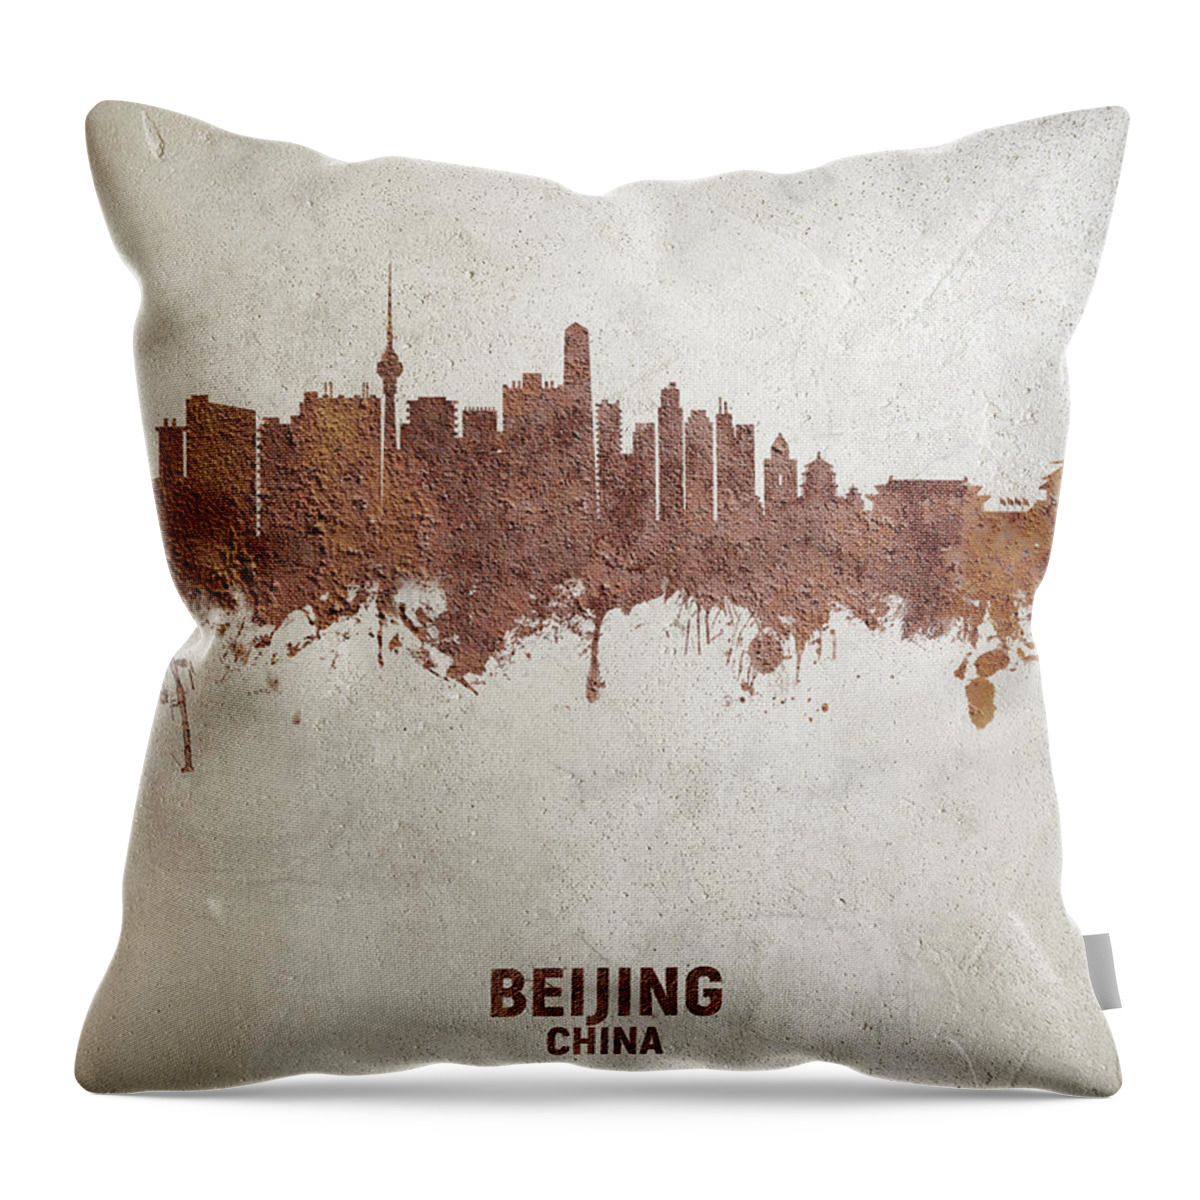 Beijing Throw Pillow featuring the digital art Beijing China Skyline by Michael Tompsett